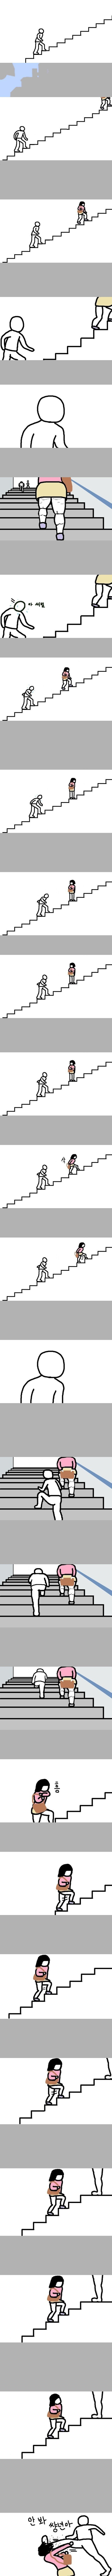 남자들 계단올라갈때 공감.